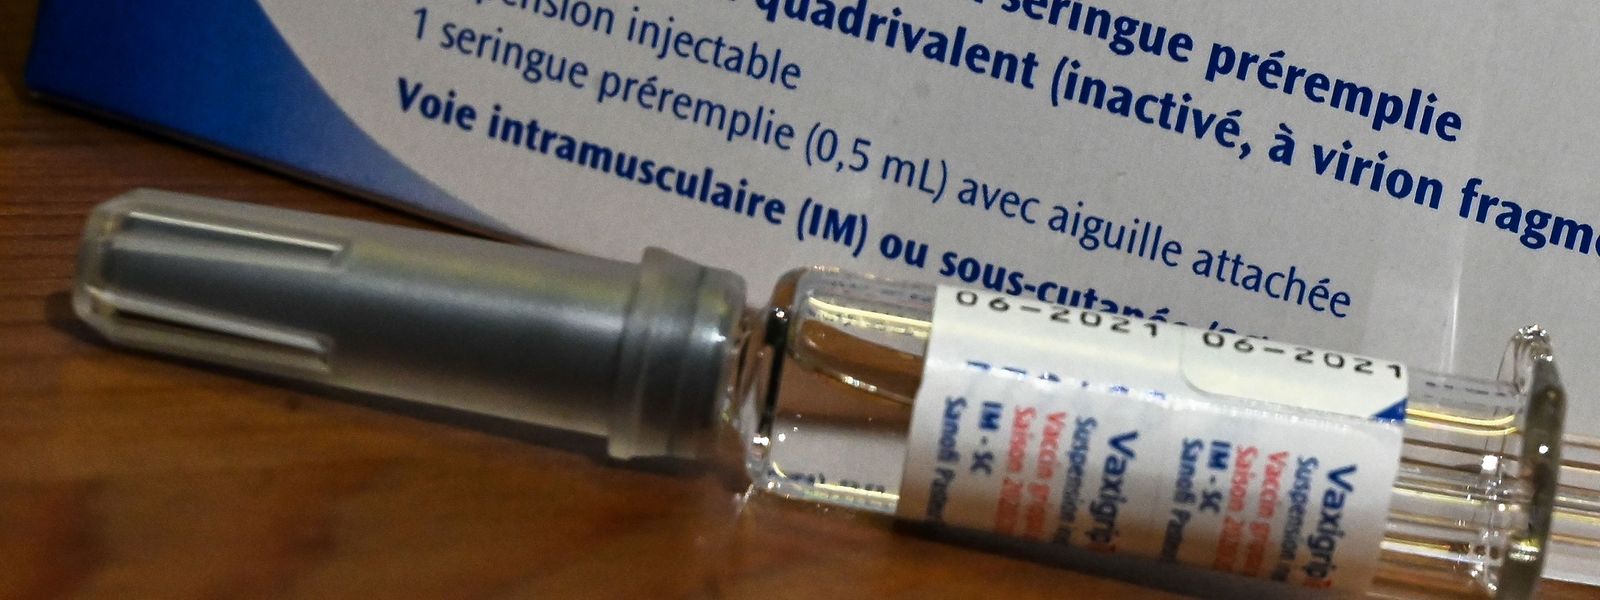 Le ministère de la Santé n'a pas reçu de réponse positive à son appel d'offres pour 110.000 doses vaccinales anti-grippe.